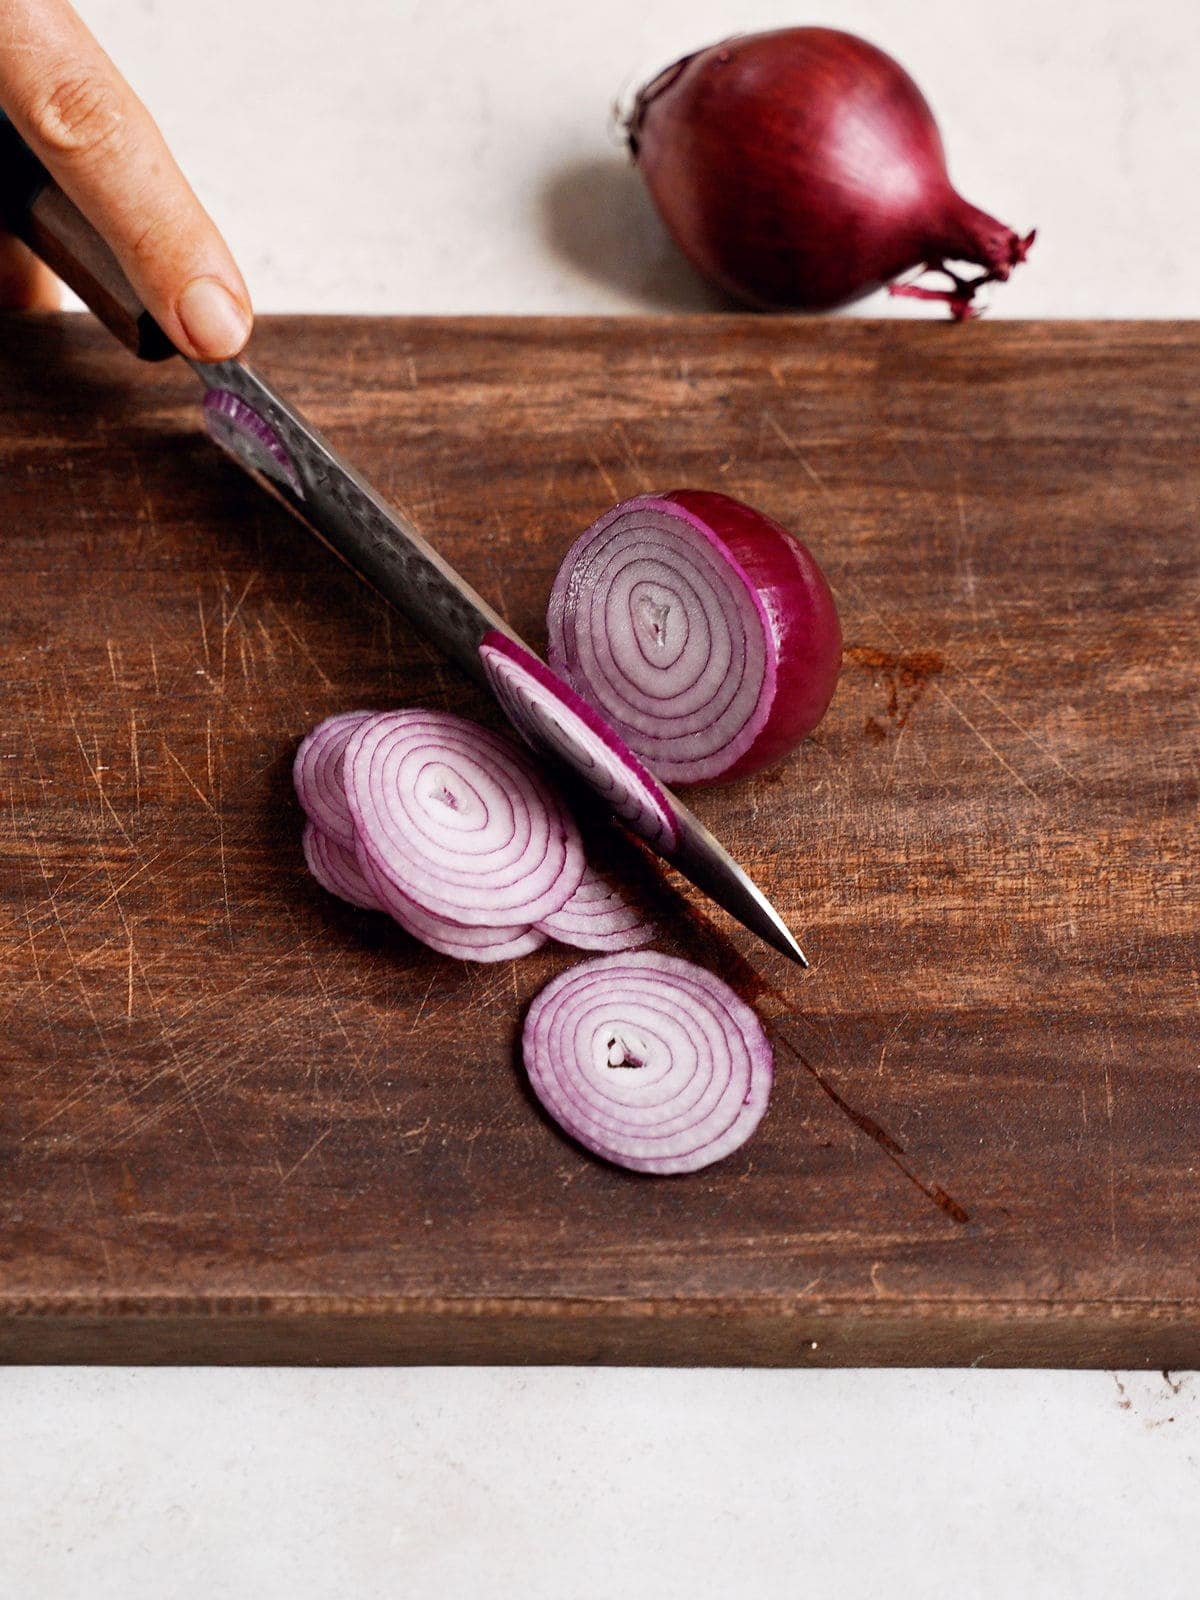 Rote Zwiebel wird mit einem Messer auf einem Holzbrett in Ringe geschnitten